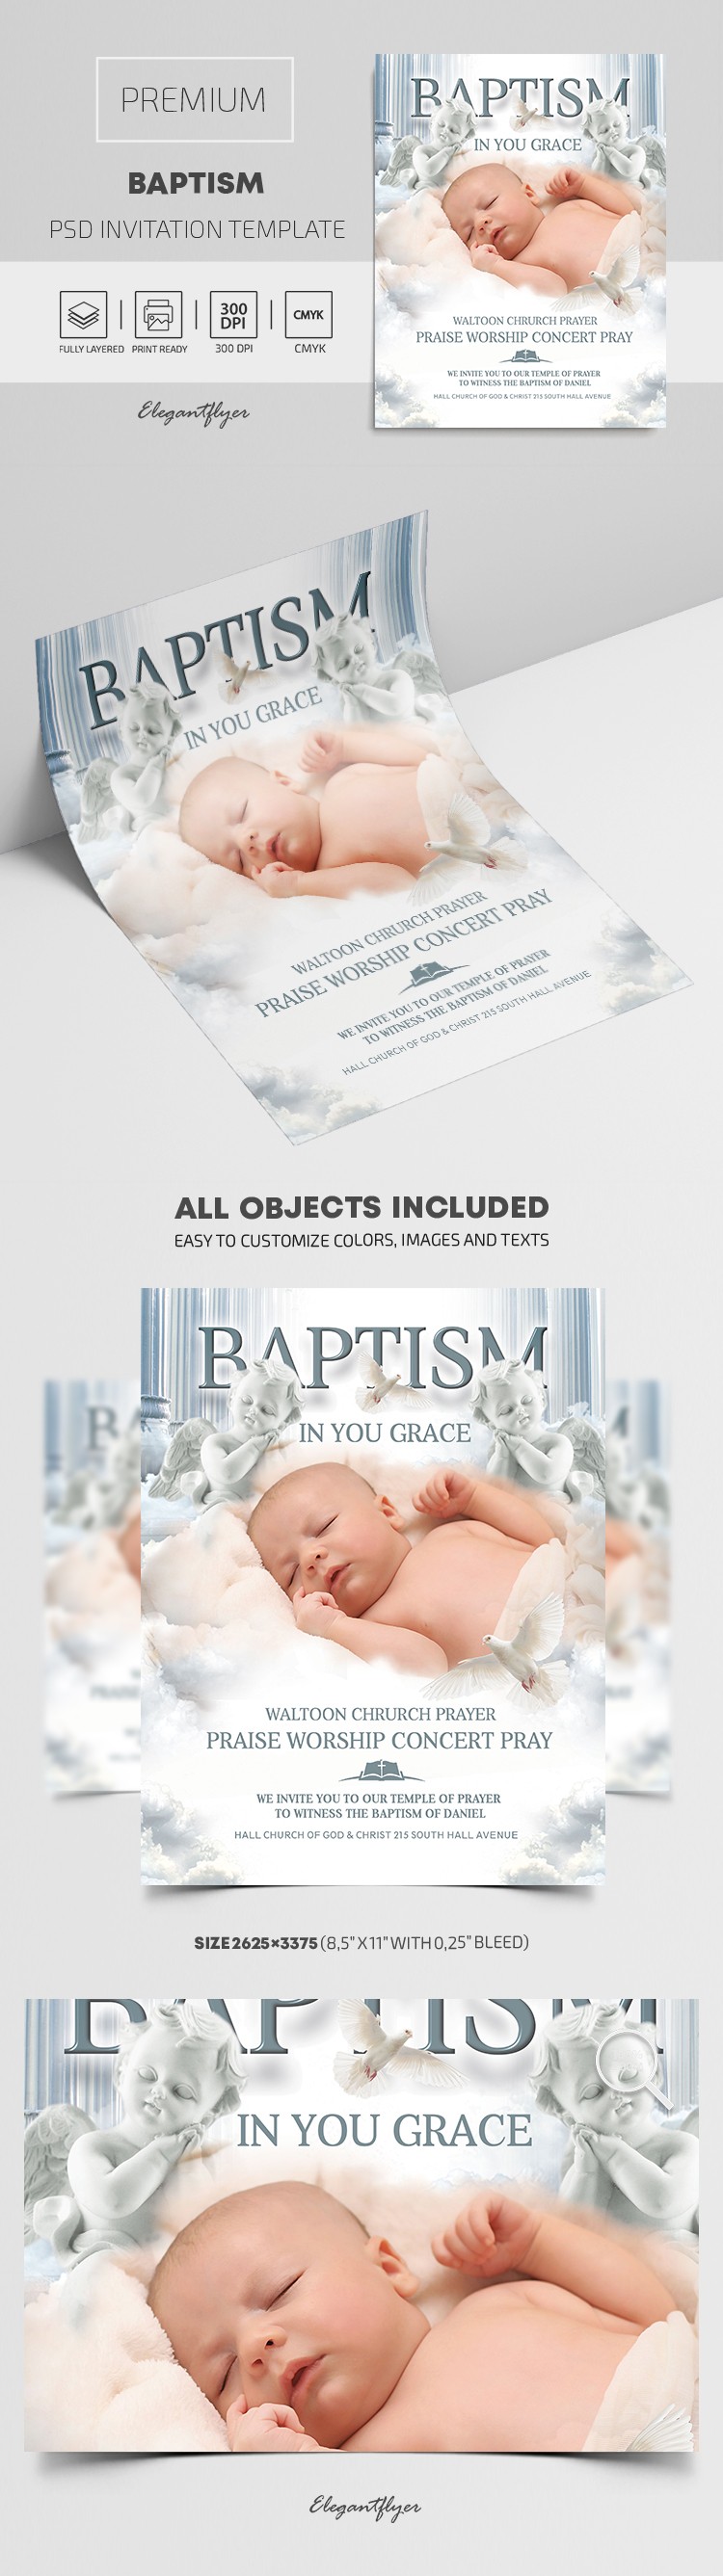 Baptism Invitation by ElegantFlyer